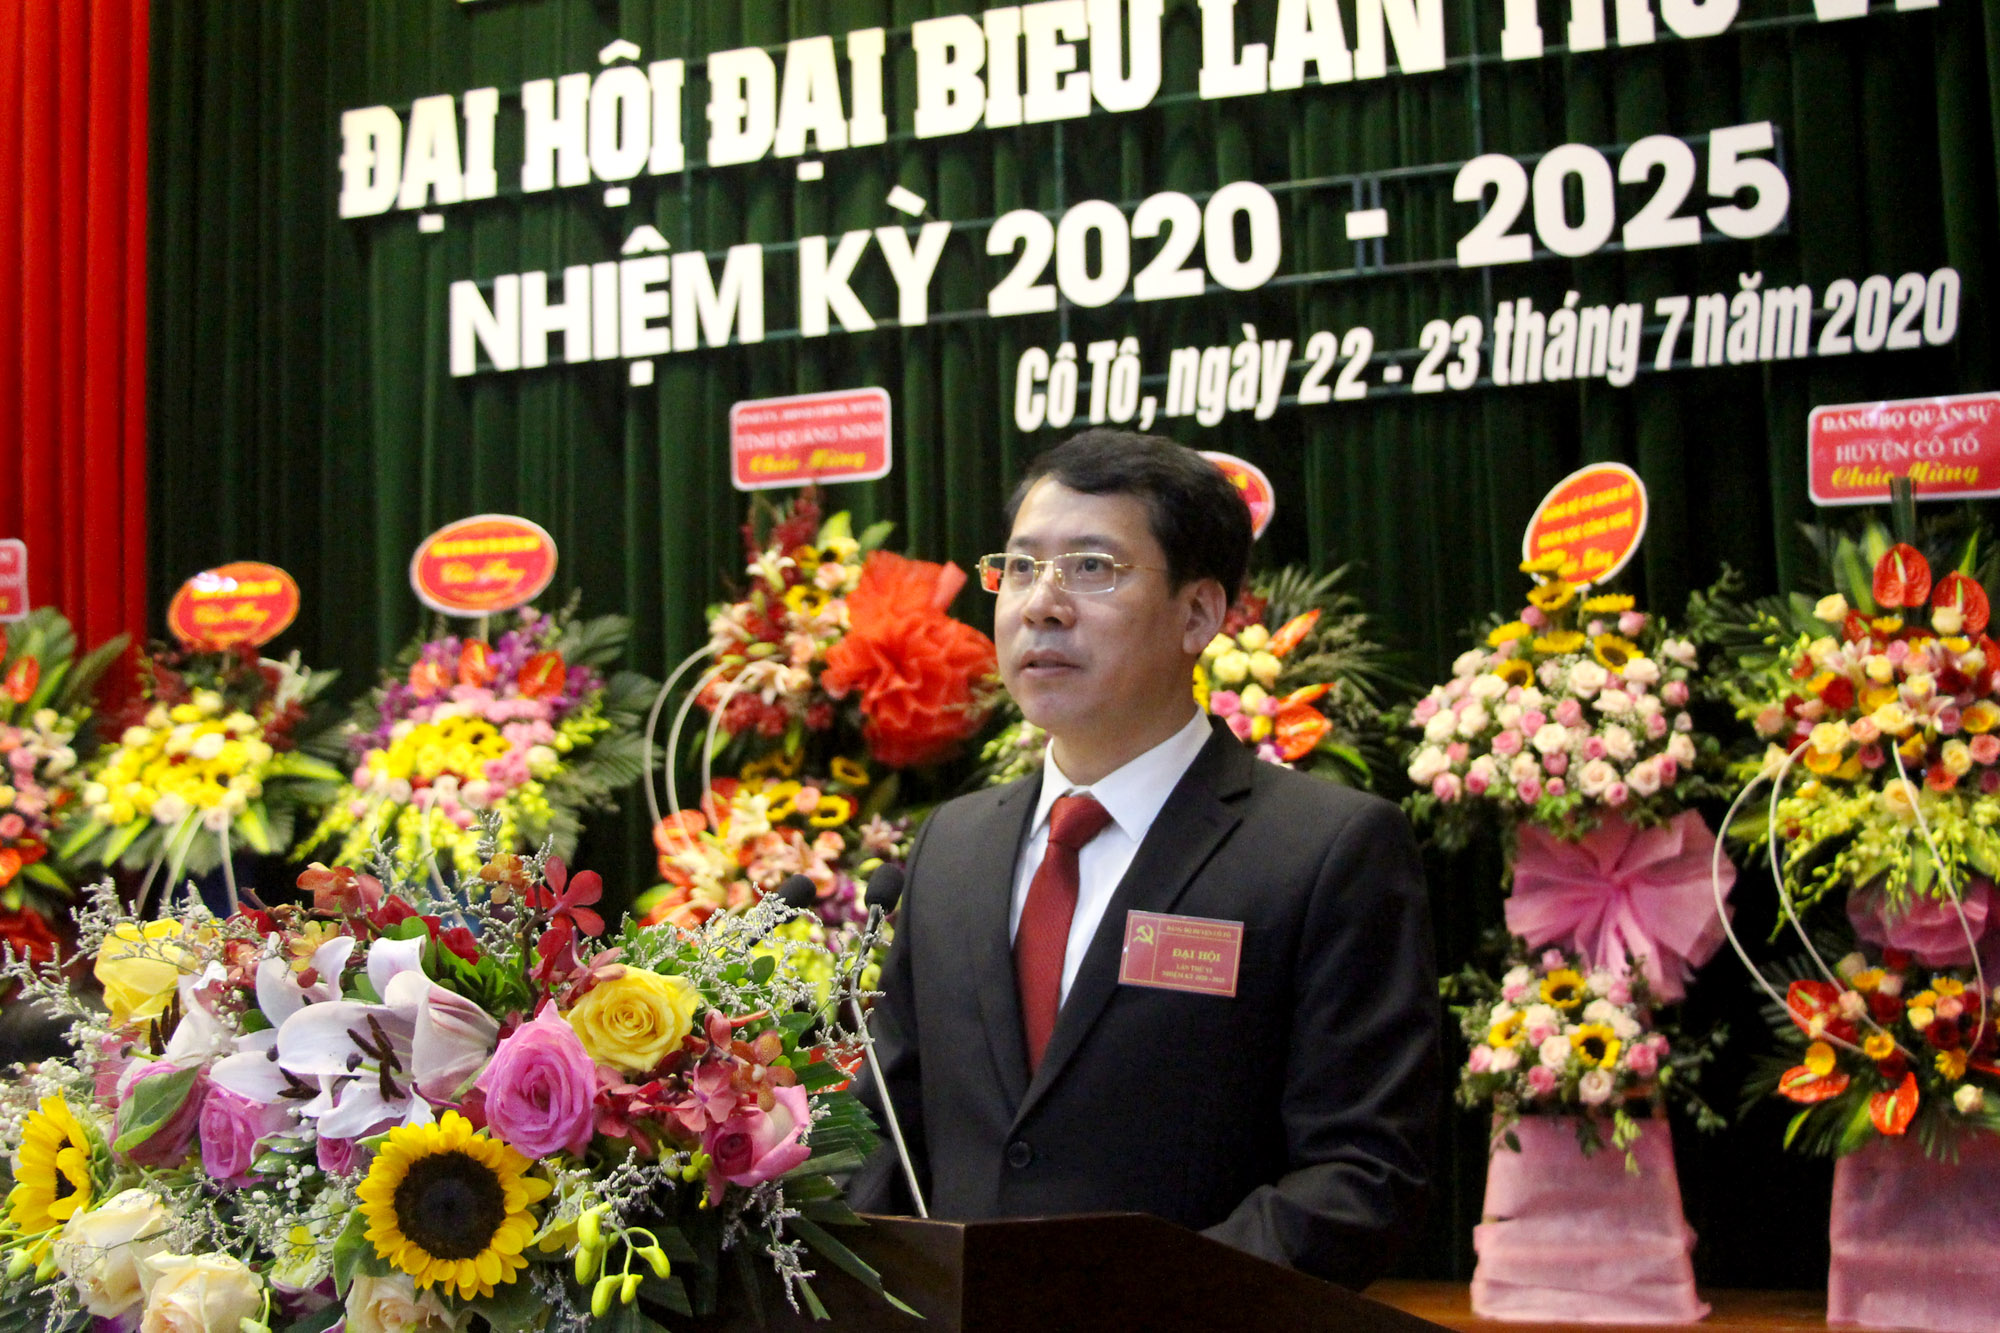 Đồng chí Trần Như Long, Bí thư Huyện ủy, Chủ tịch UBND huyện Cô Tô trình bày báo cáo chính trị tại đại hội.